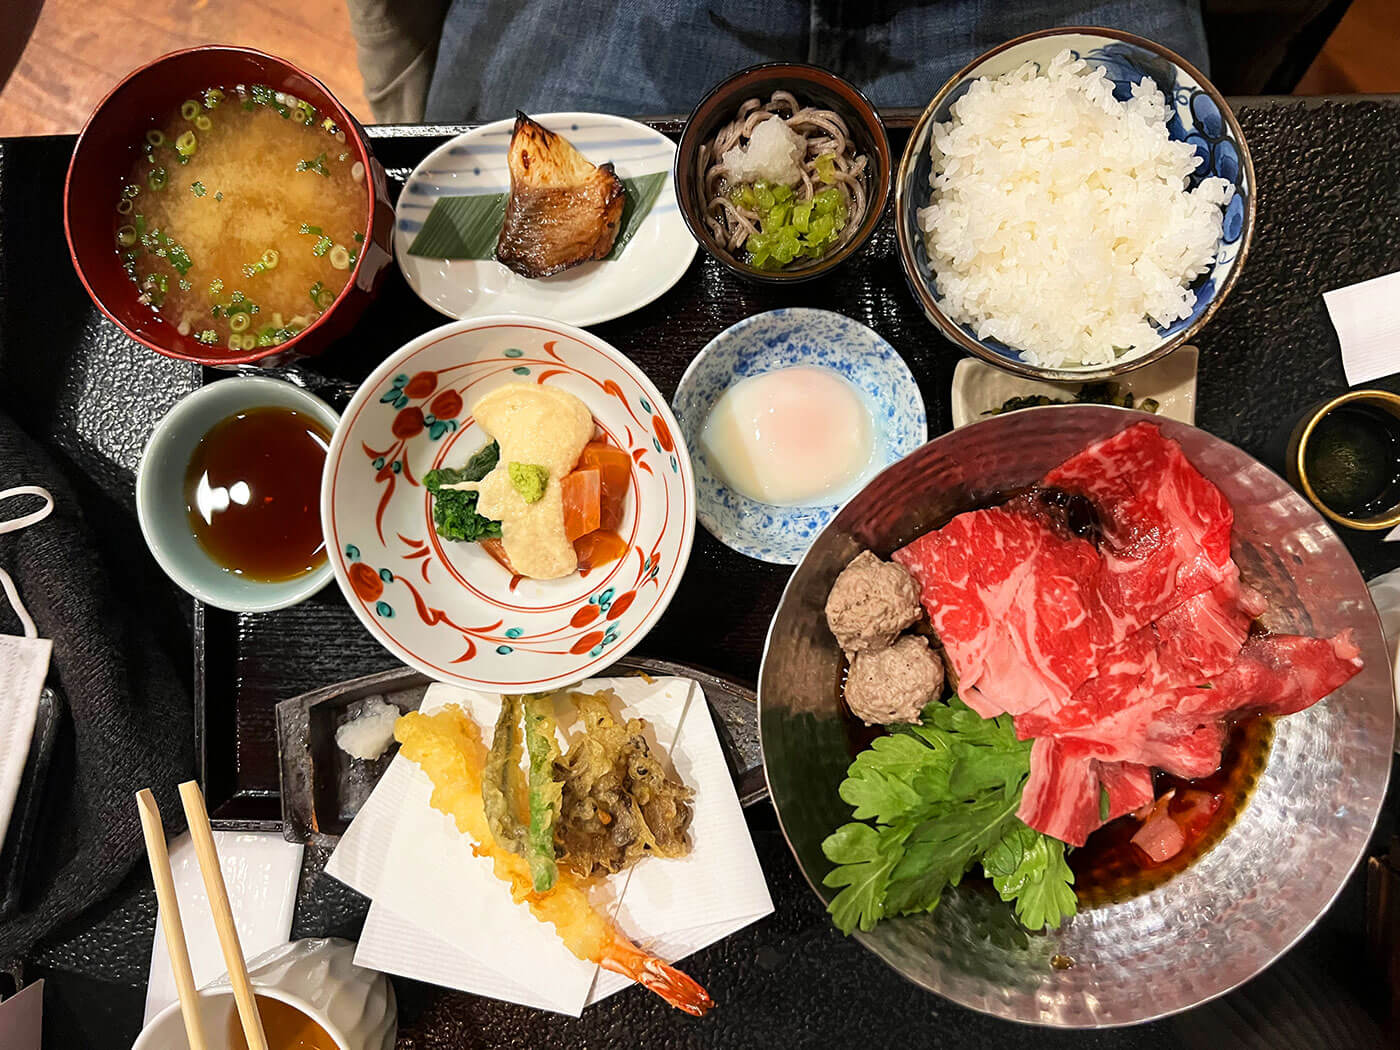 Karuizawa Travel Guide - Hoshino Onsen Meal